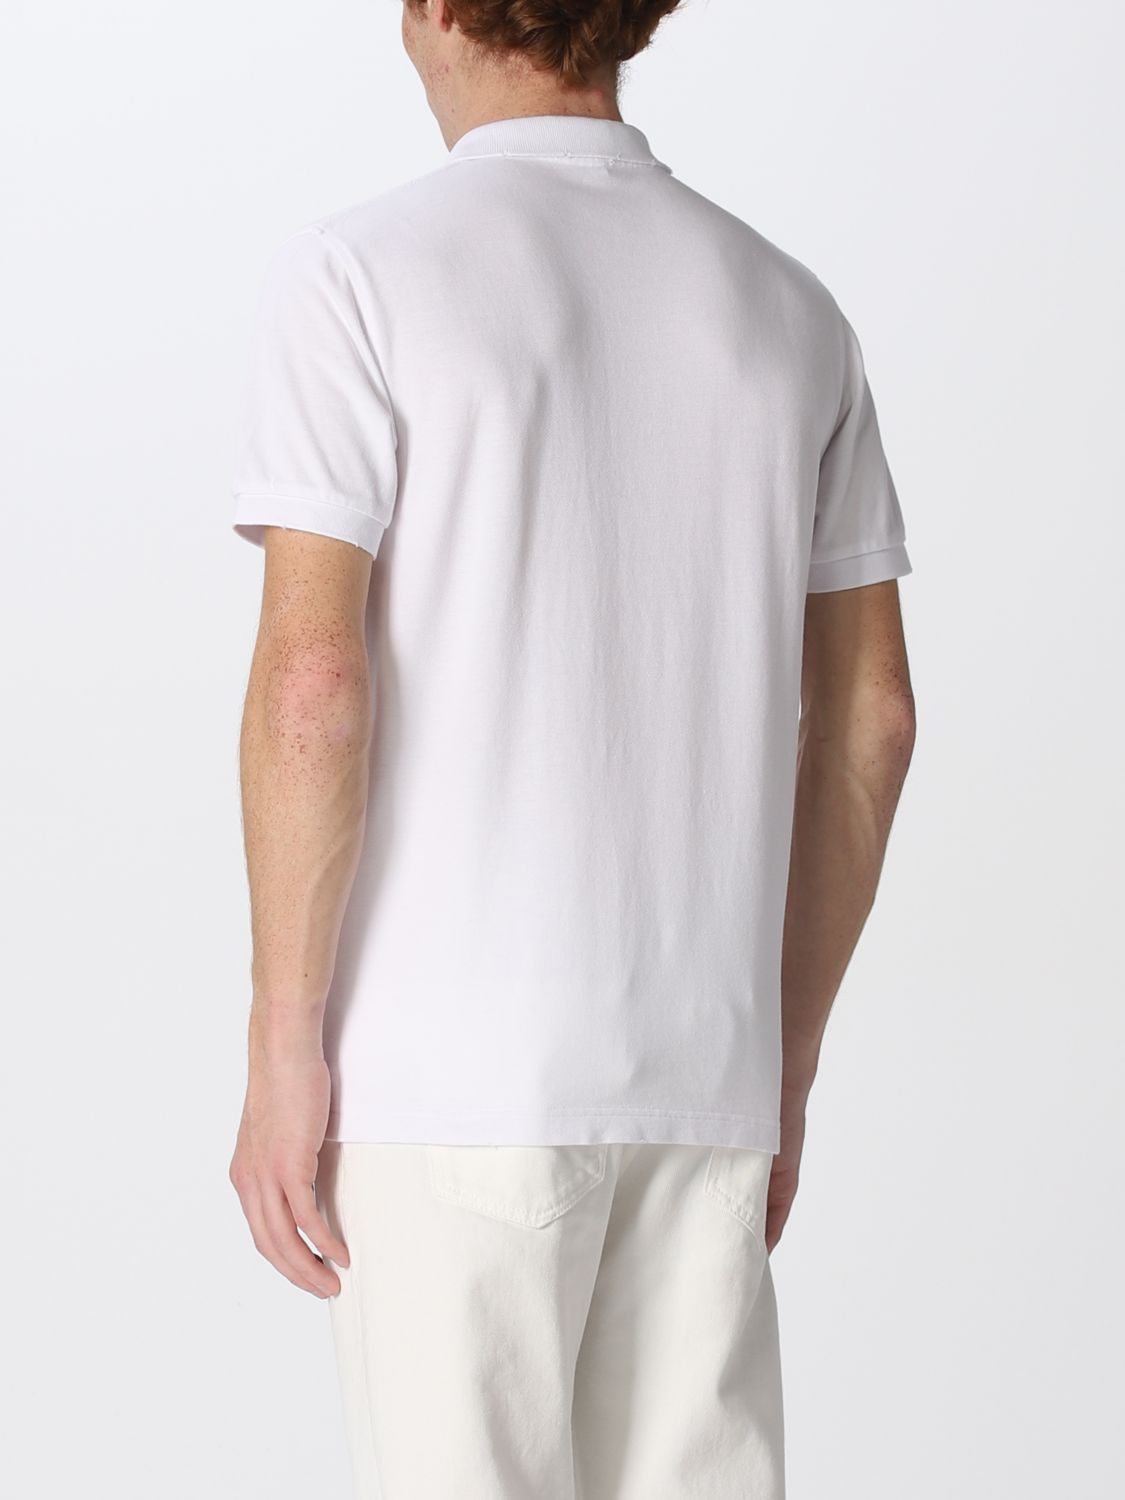 Polo shirt Sun 68: Sun 68 polo shirt for man white 2